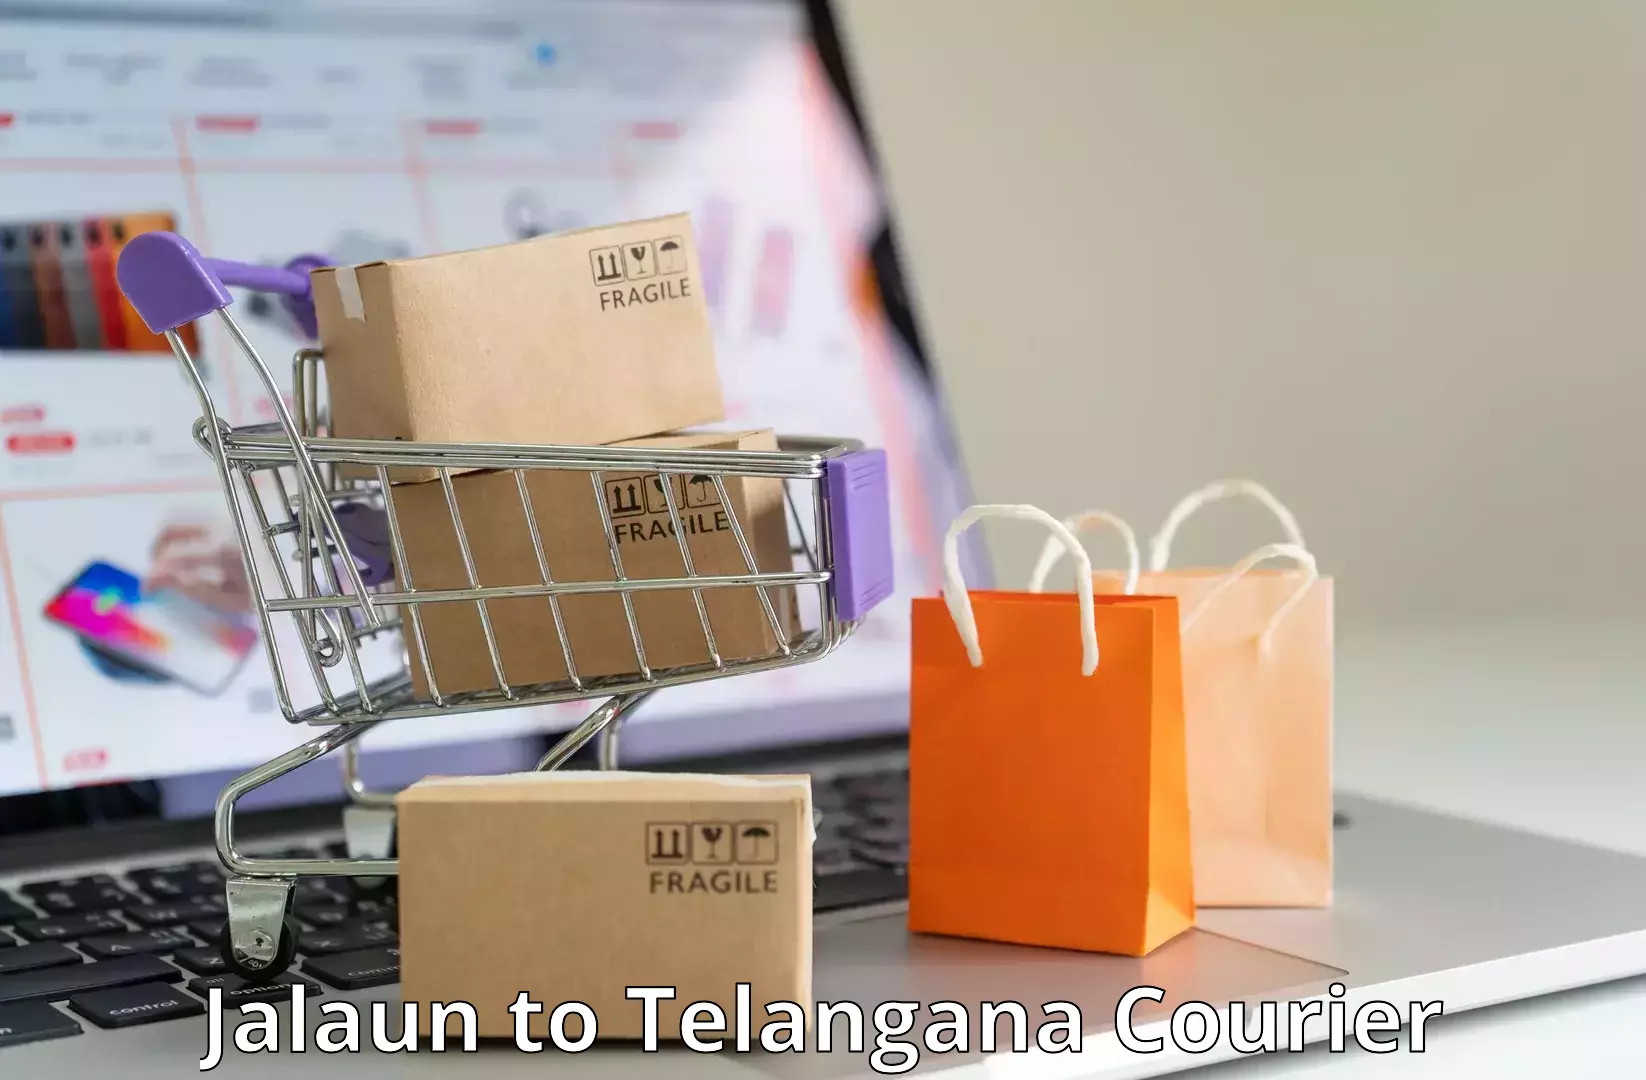 Online package tracking Jalaun to Gudur Warangal